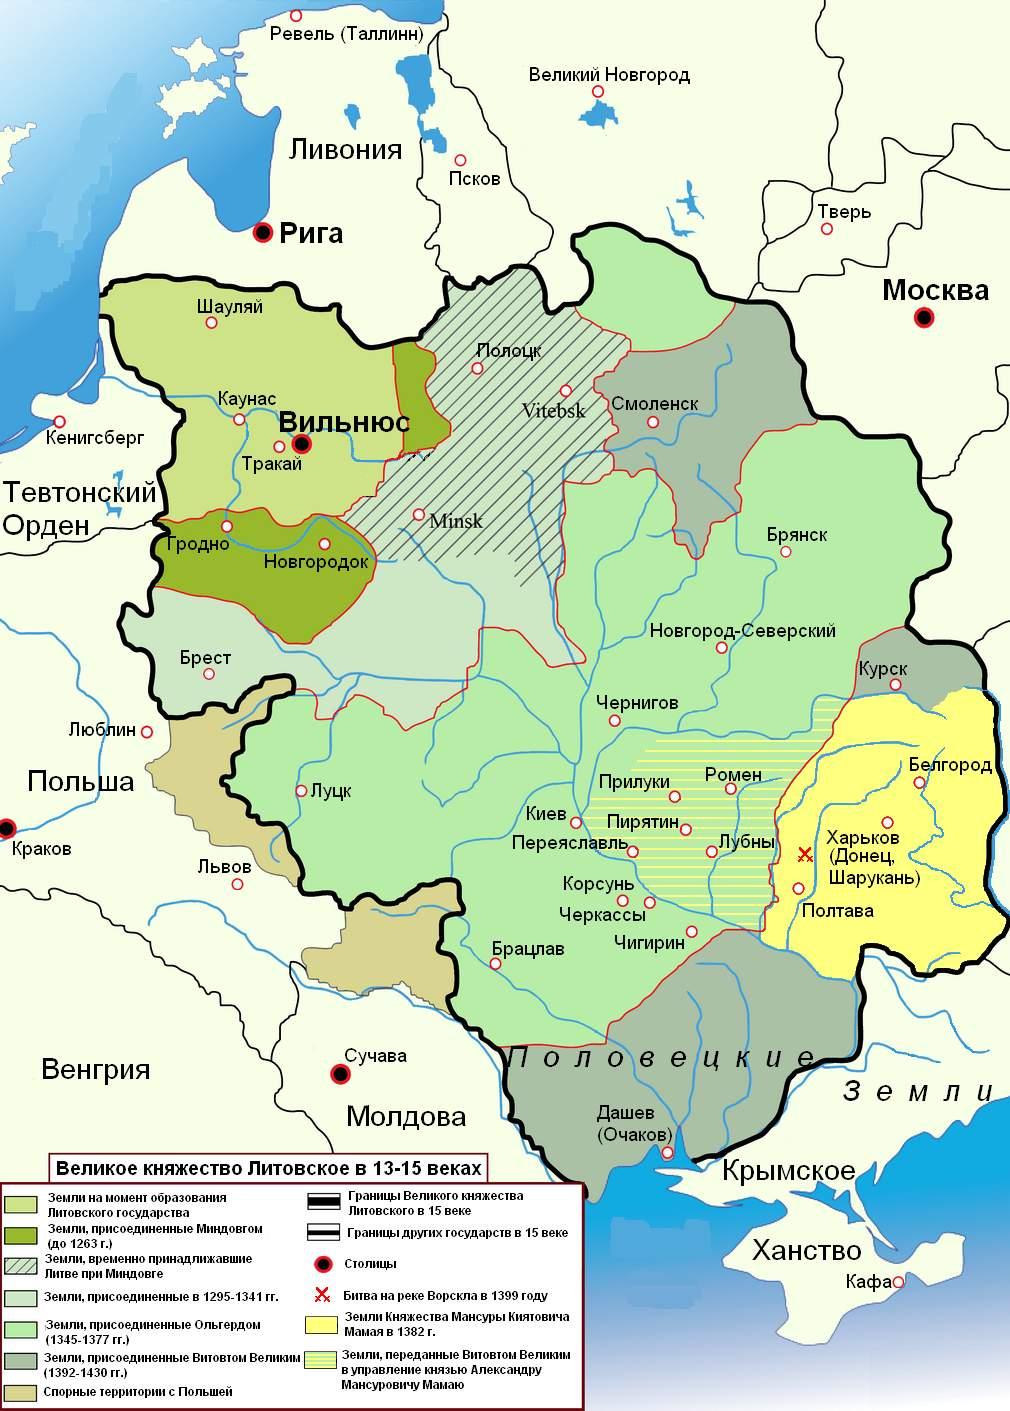 Великое Княжество Литовское в 13-15 веках